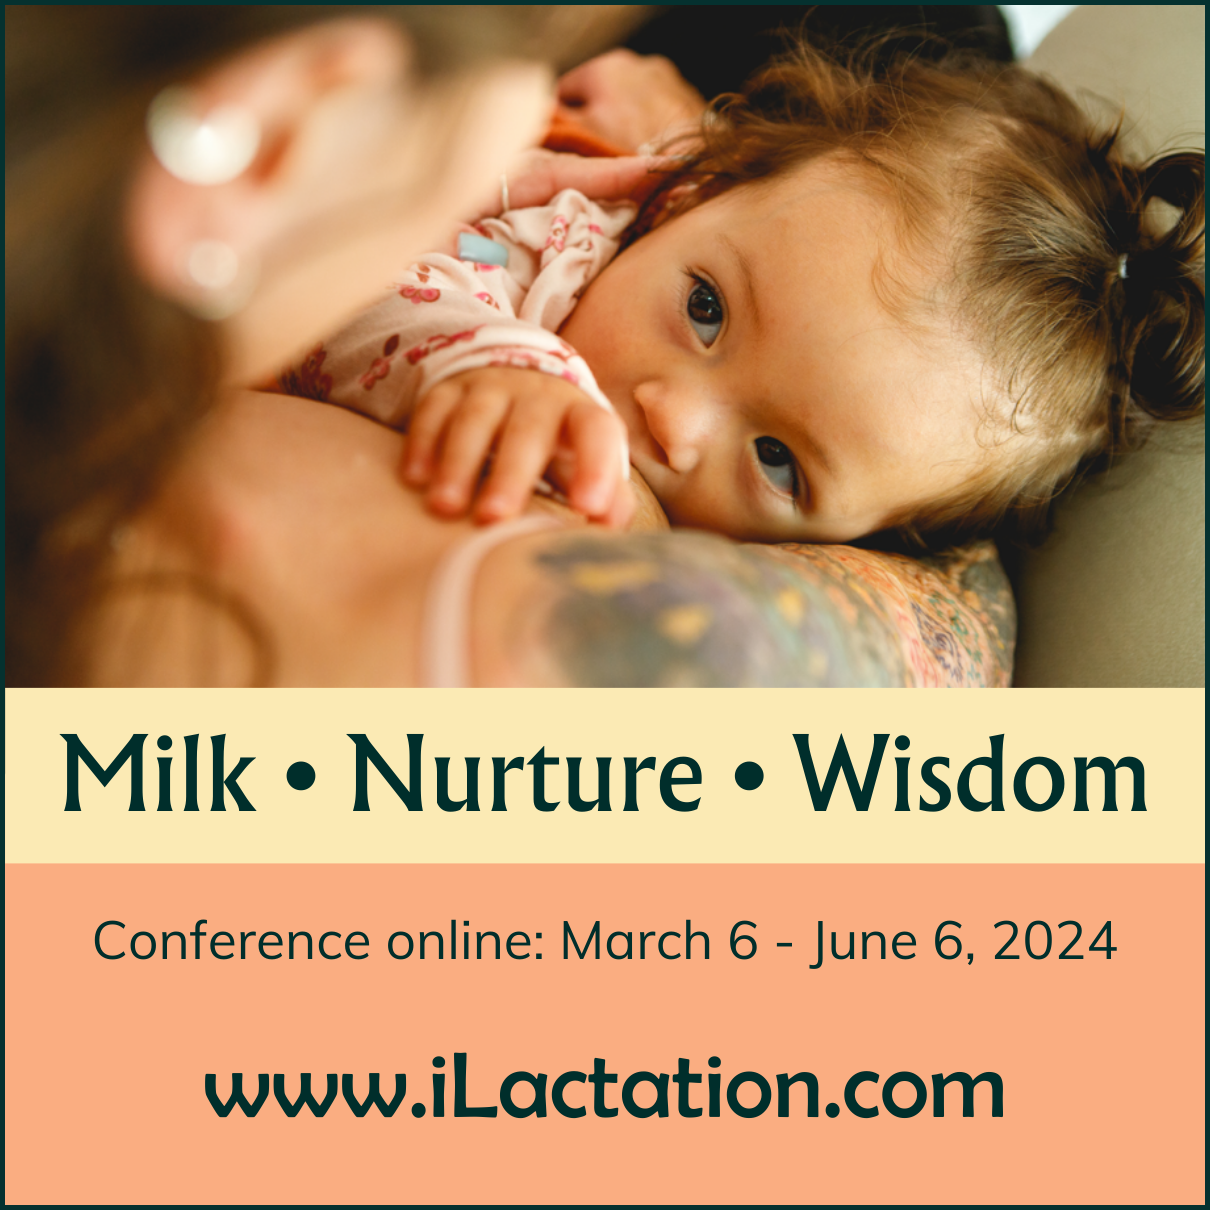 Insta picture - Milk • Nurture • Wisdom